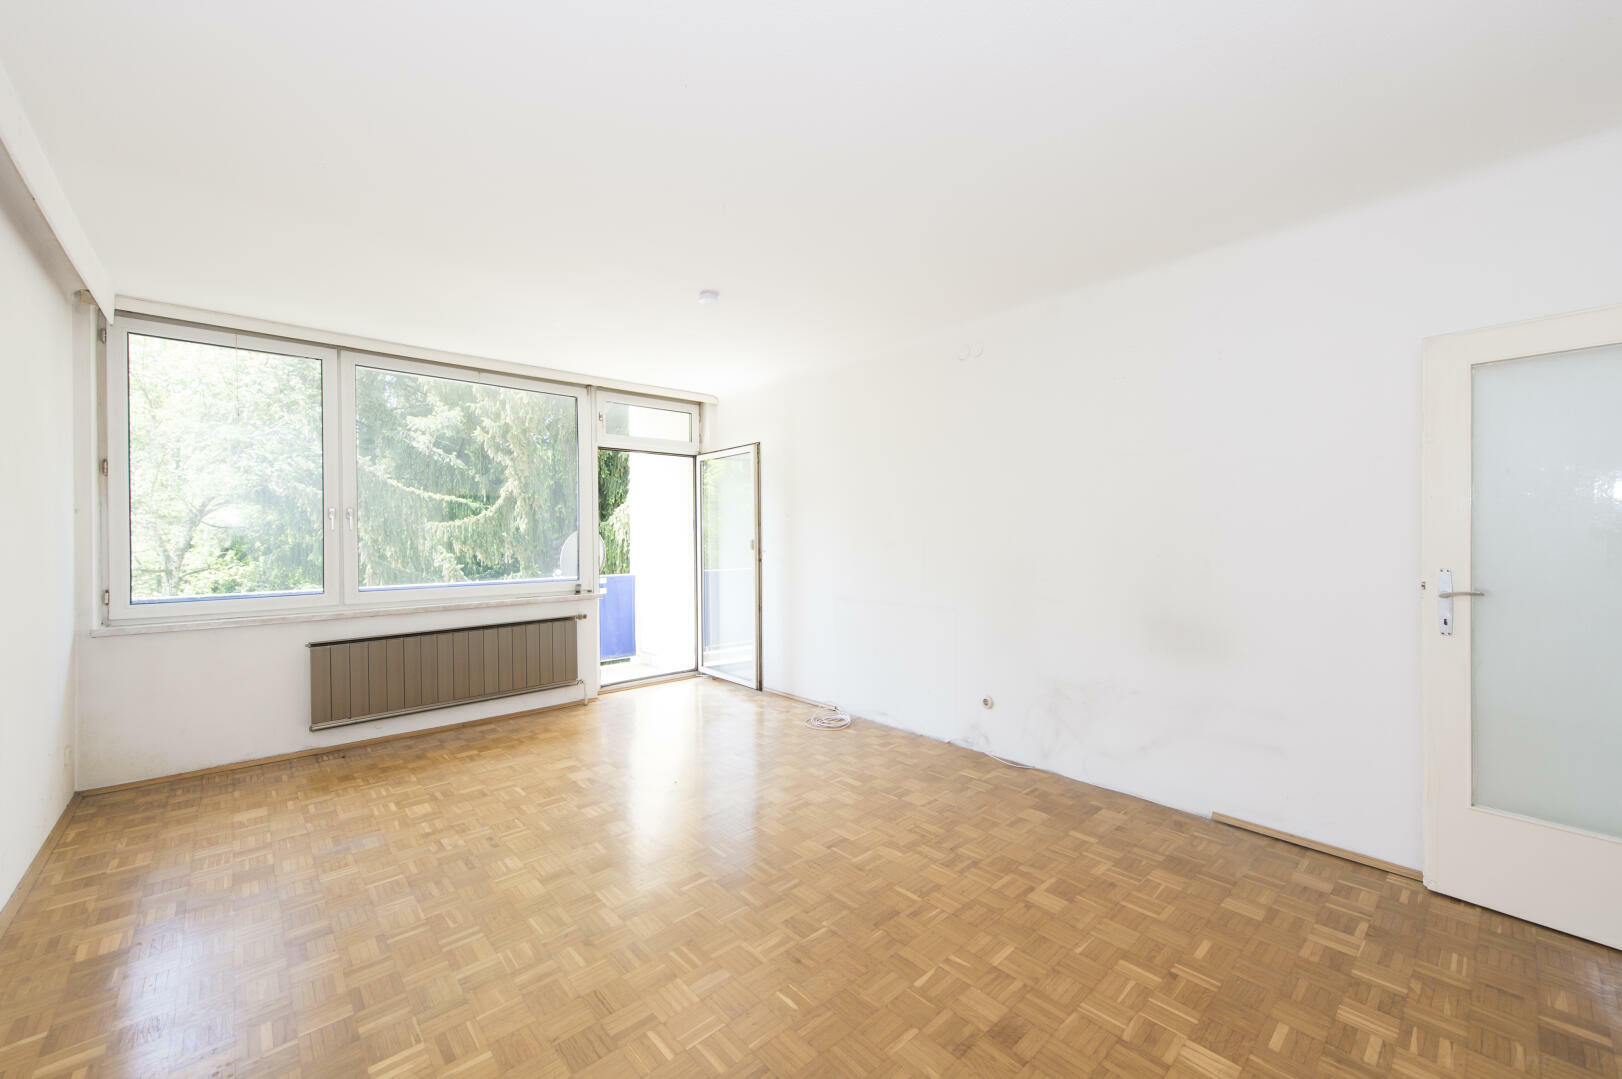 Sanierungsfähige 3-Zimmer Wohnung in St. Peter! /  / 8042 Graz / Bild 4